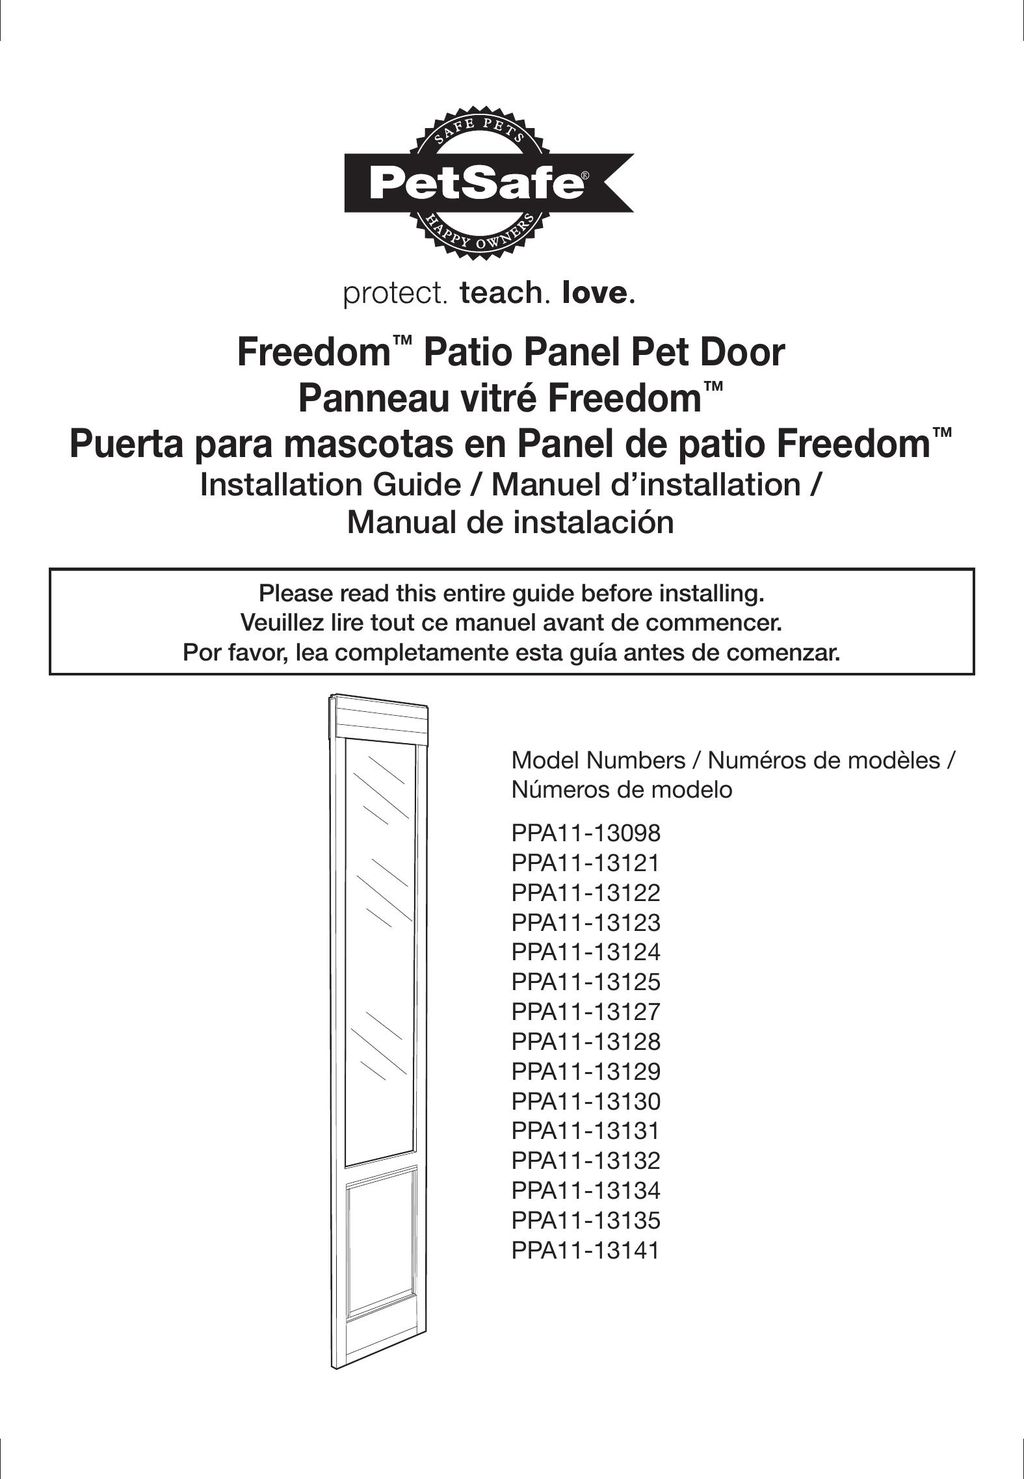 Petsafe PPA11-13128 Door User Manual